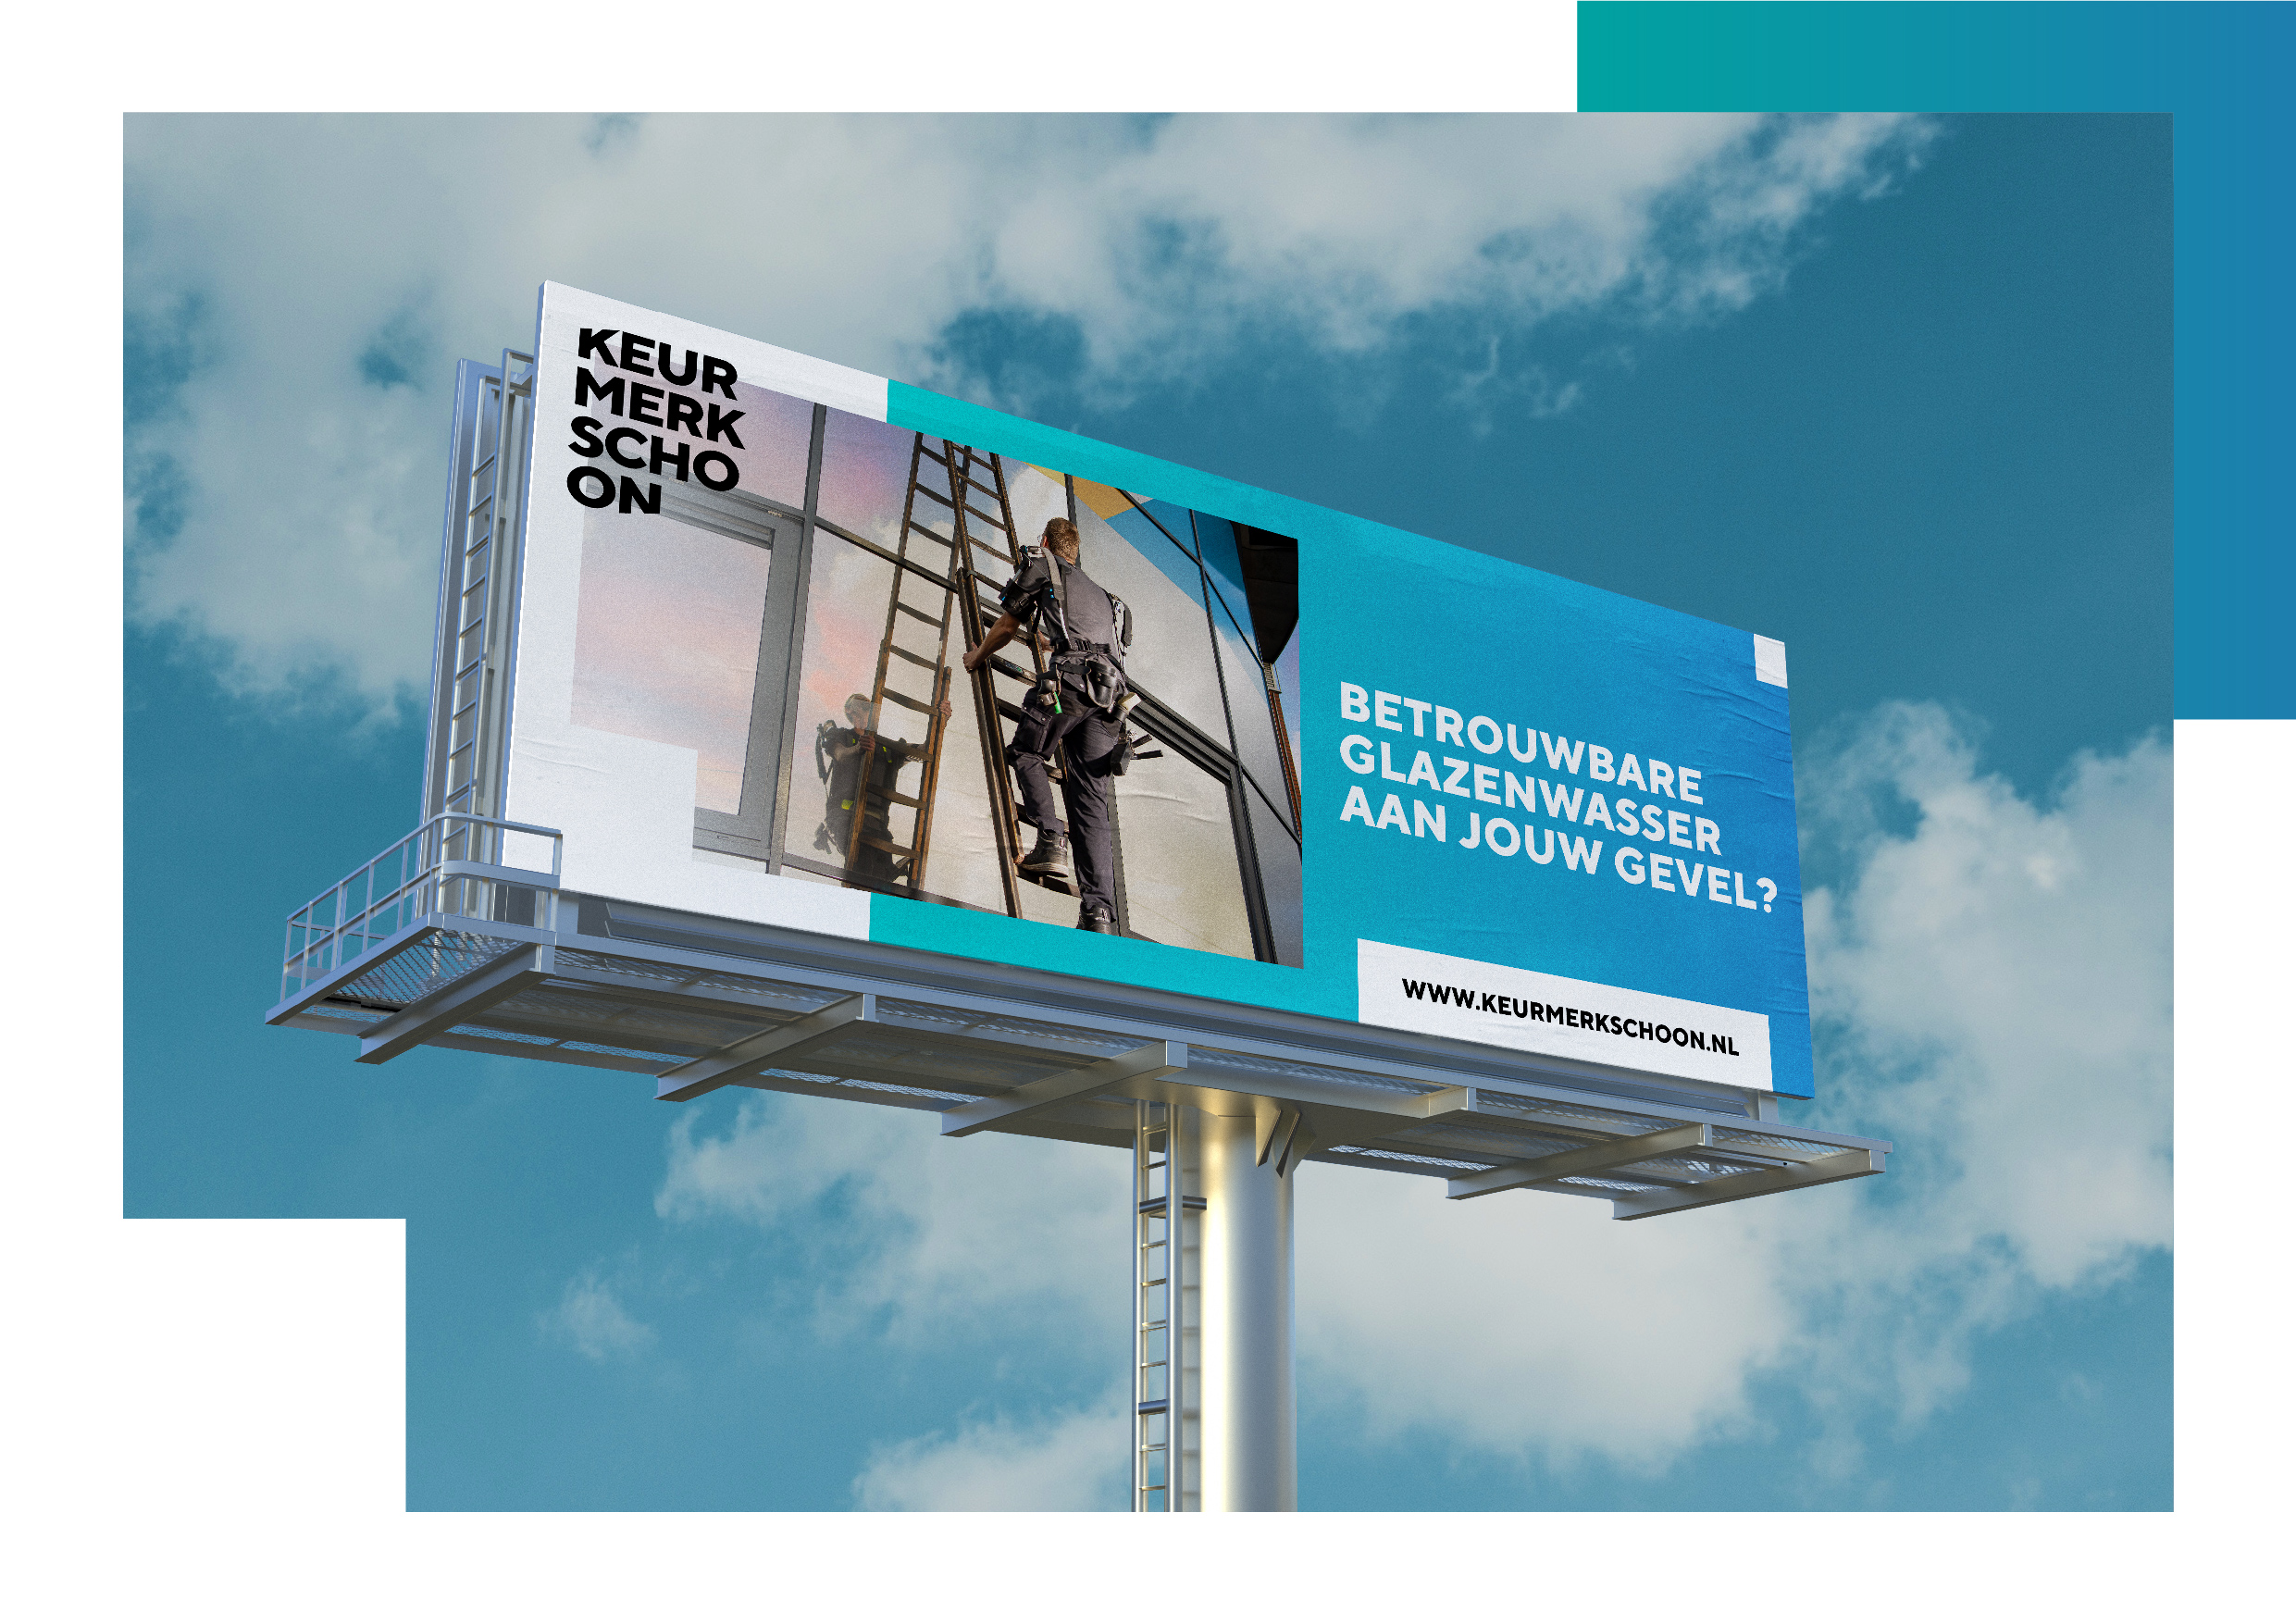 Keurmerk schoon mock up billboard campagne many more